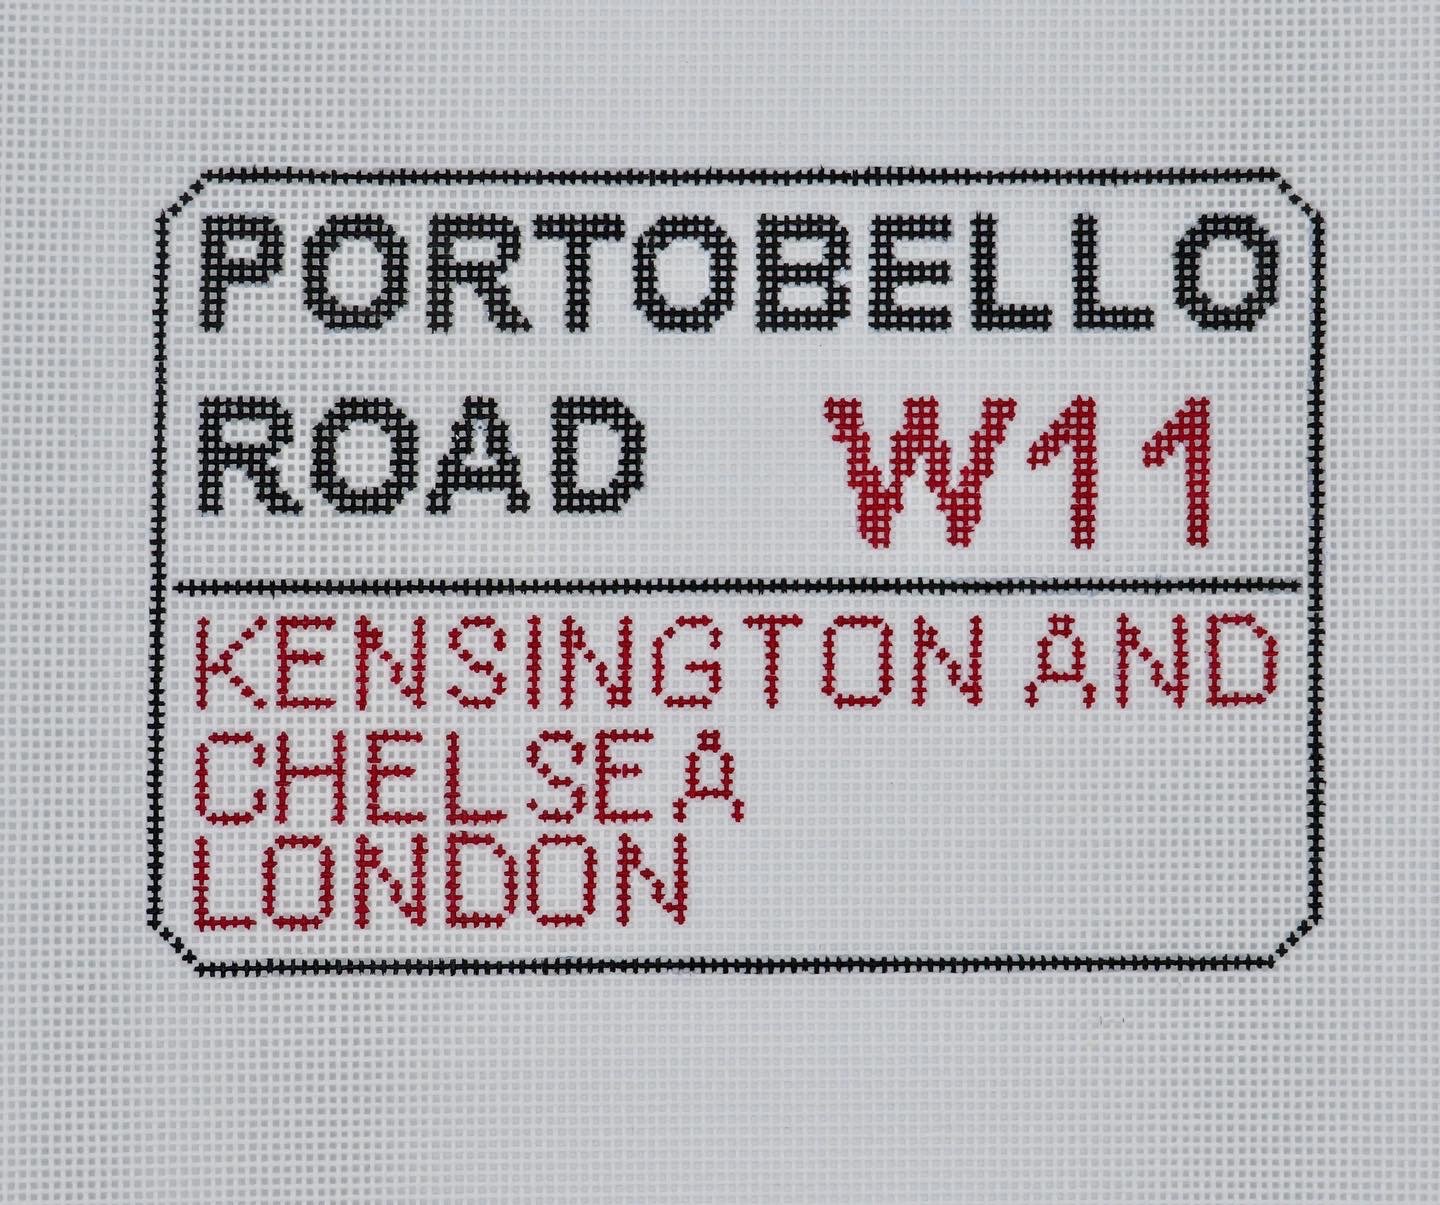 Portobello Road - London